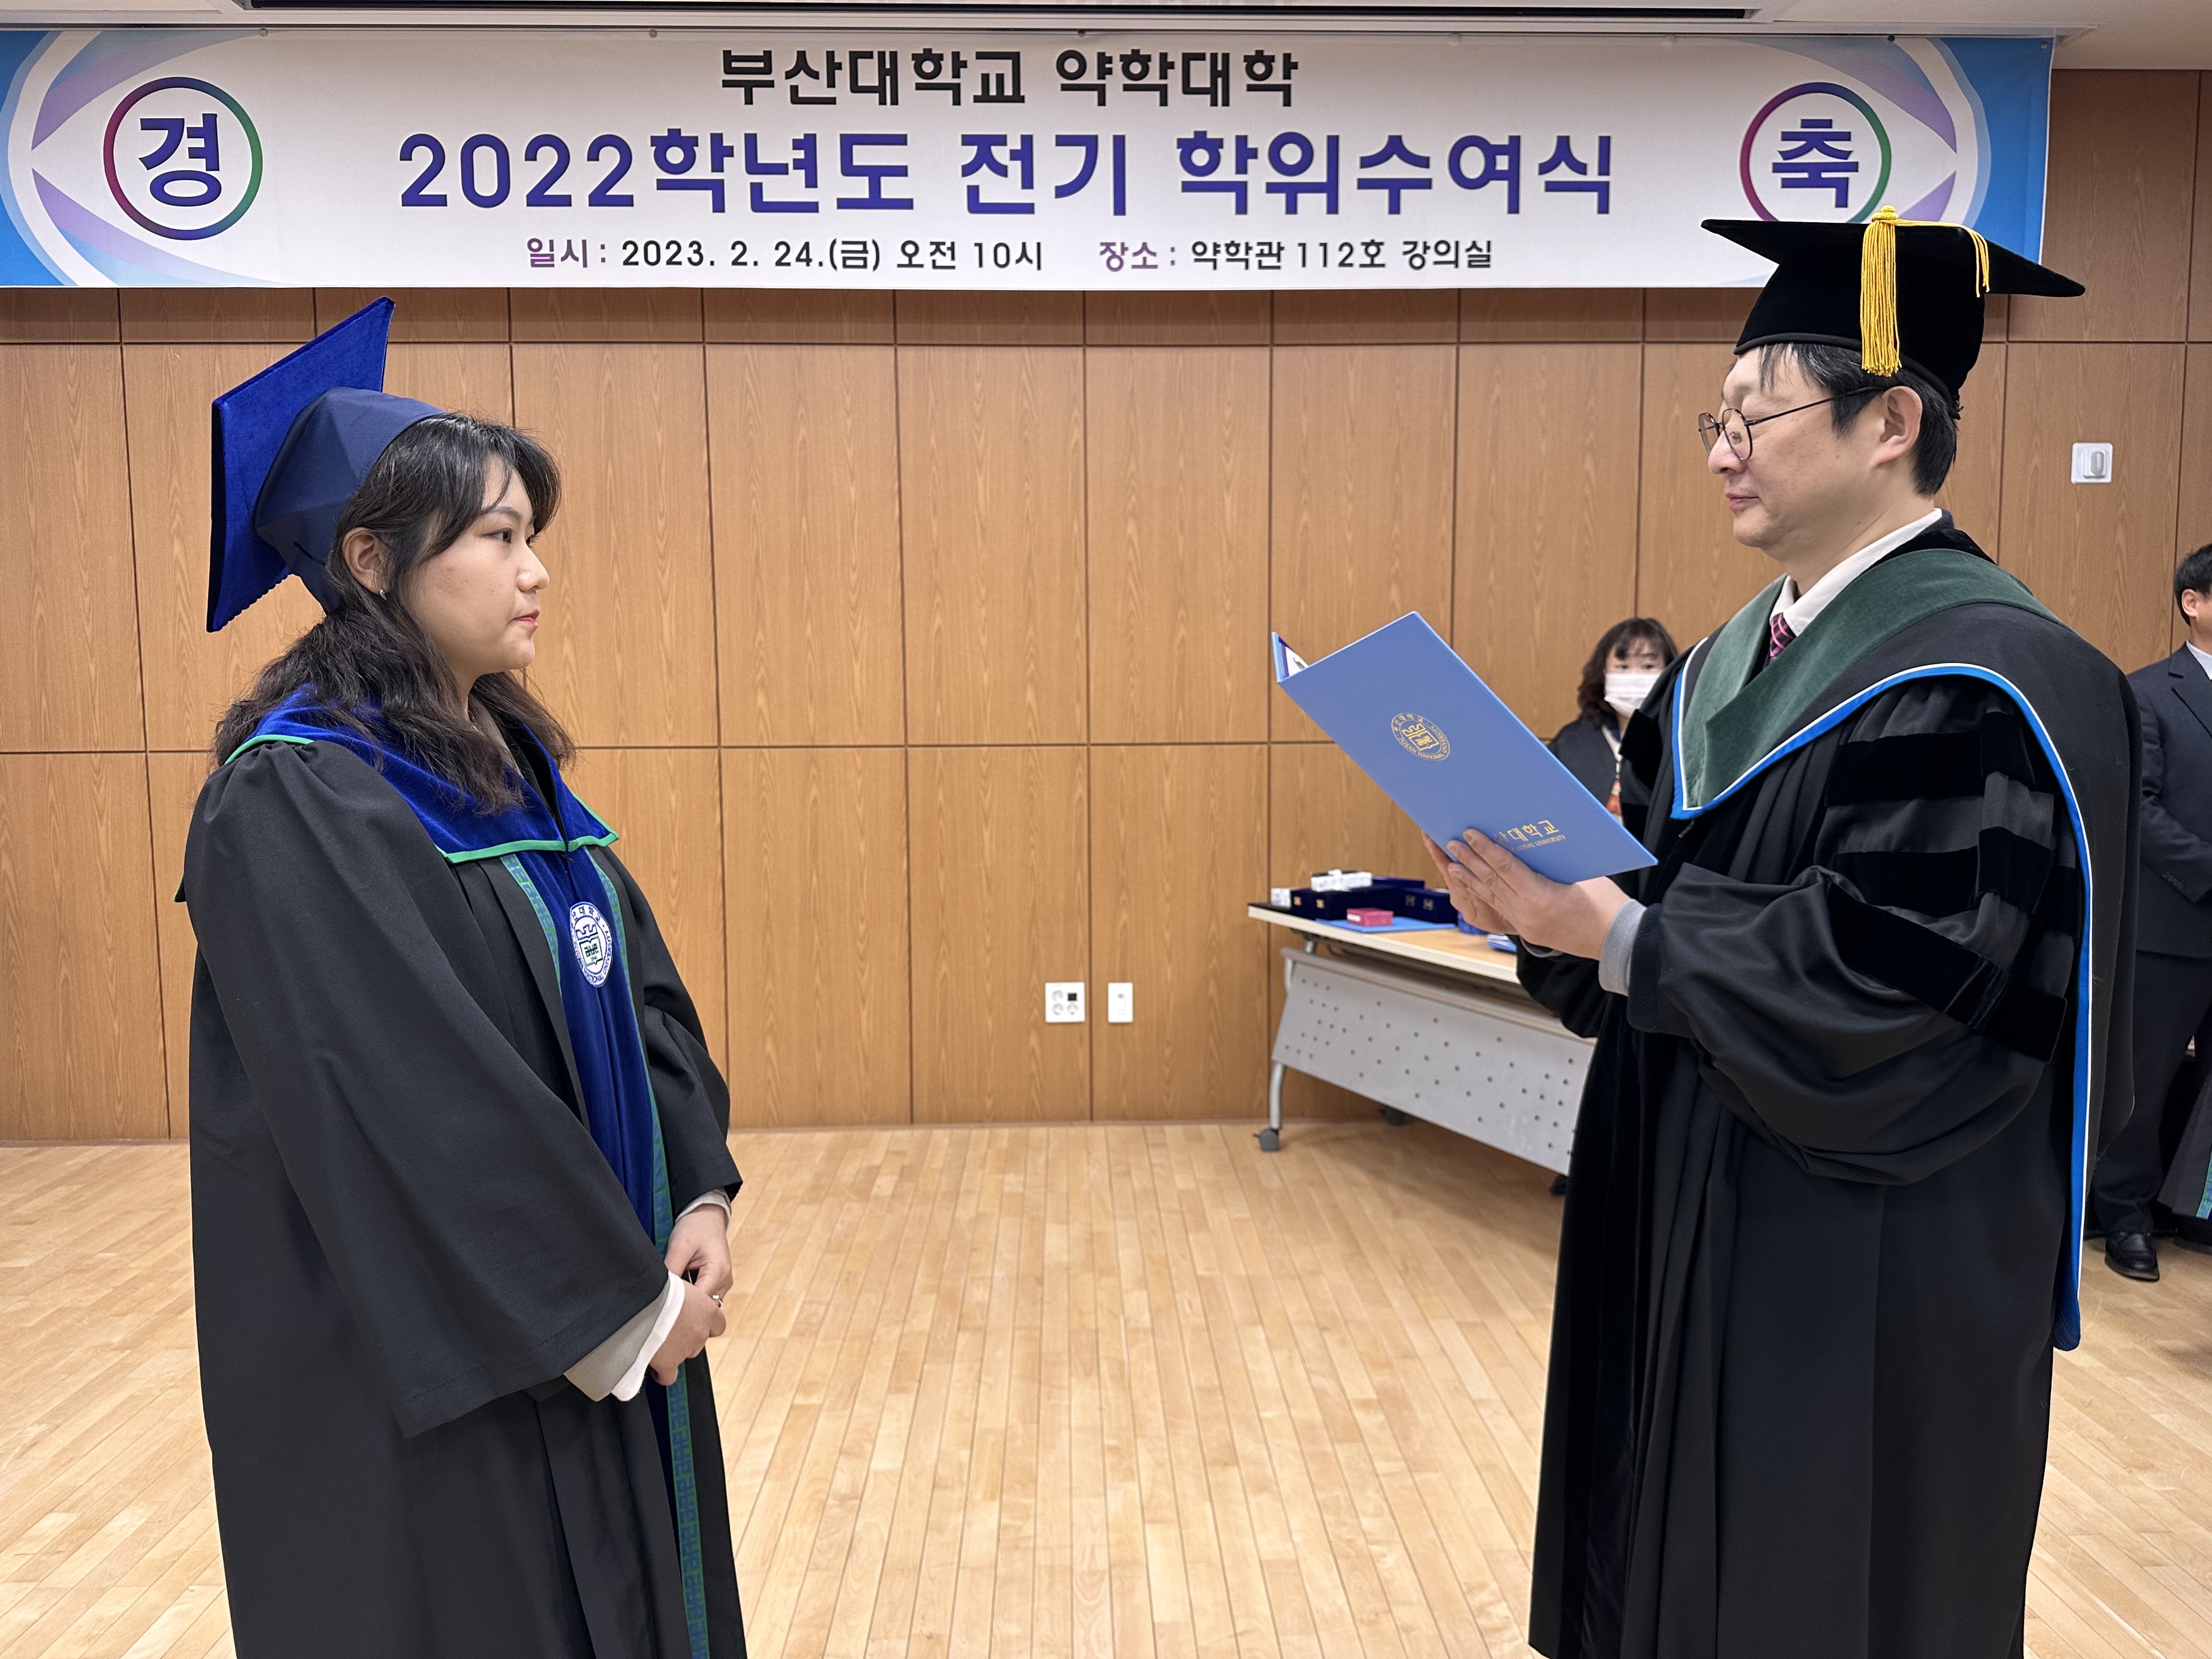 2022학년도 전기 학위수여식 - 박지연, 박혜민, 방다은, 서강원 제약 박지연-학위수여사진 (4).jpg